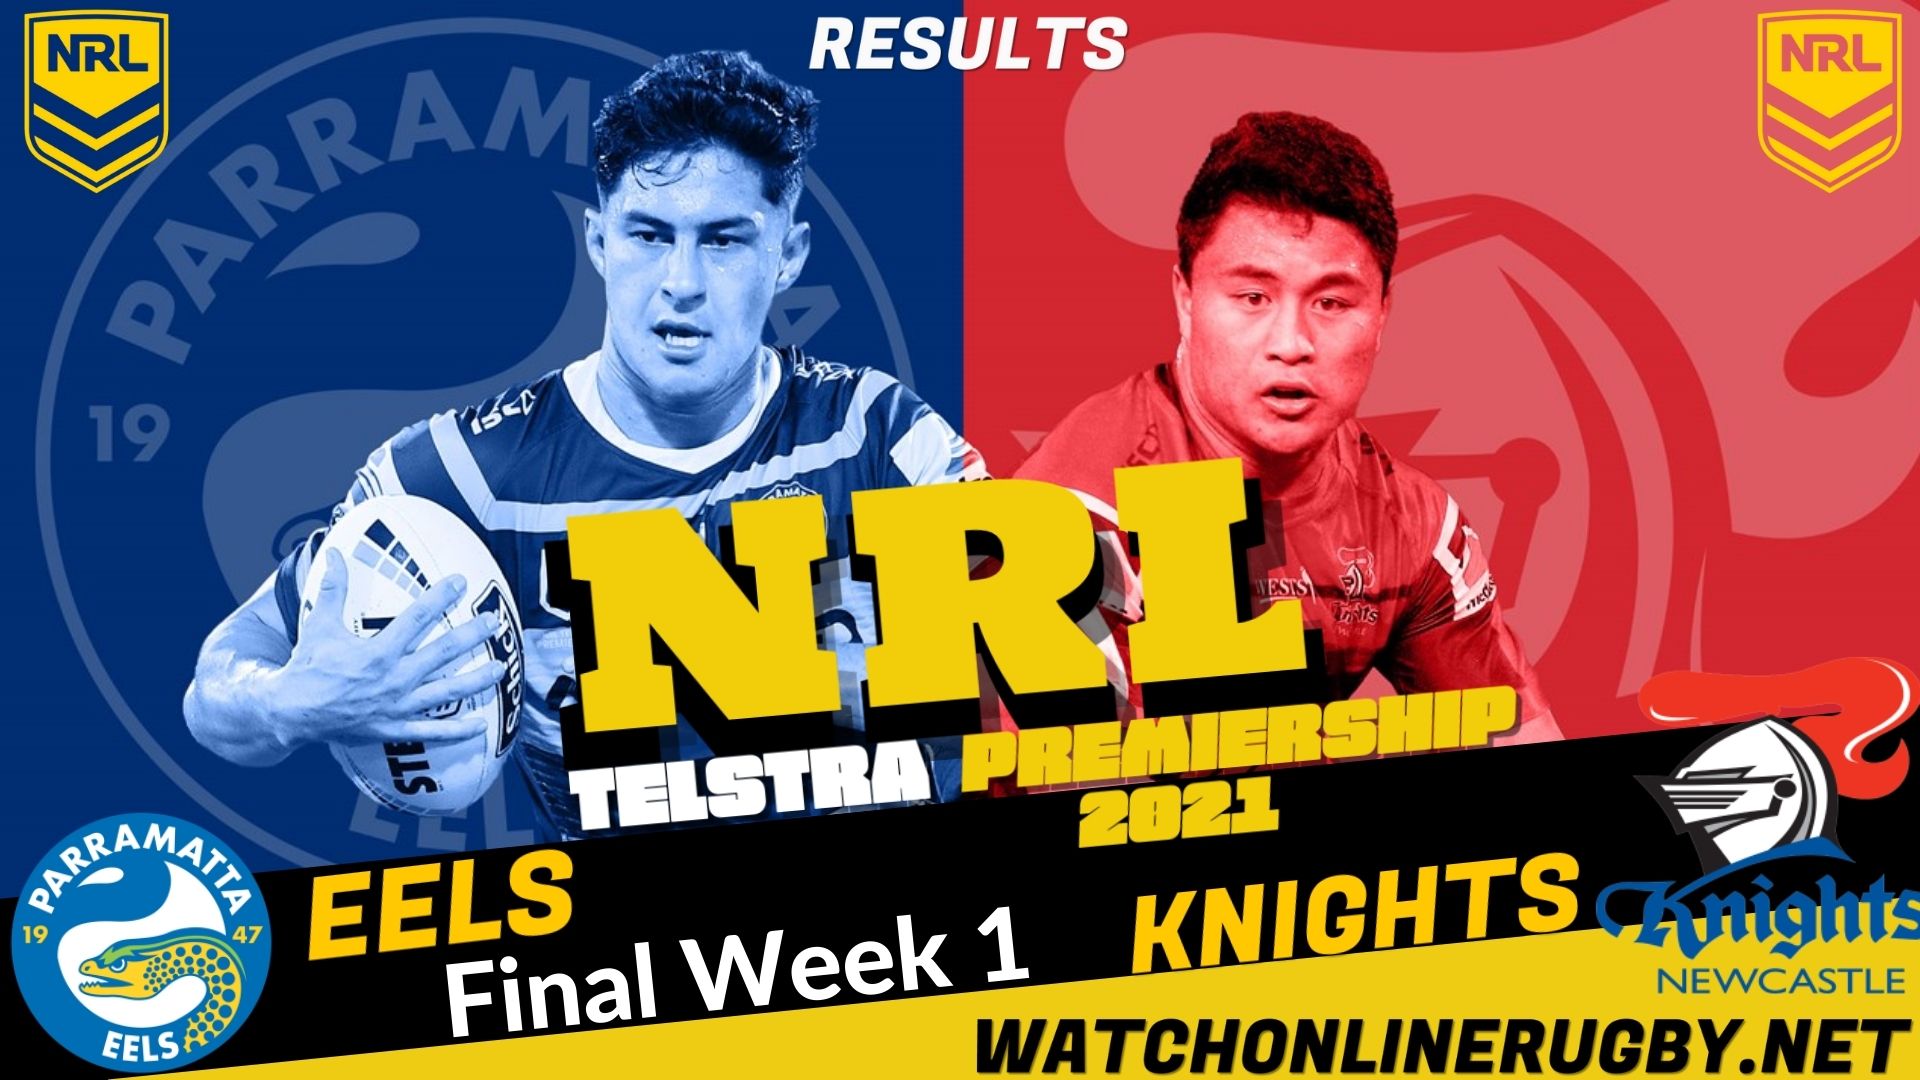 Eels Vs Knights Highlights Final Week 1 NRL Rugby